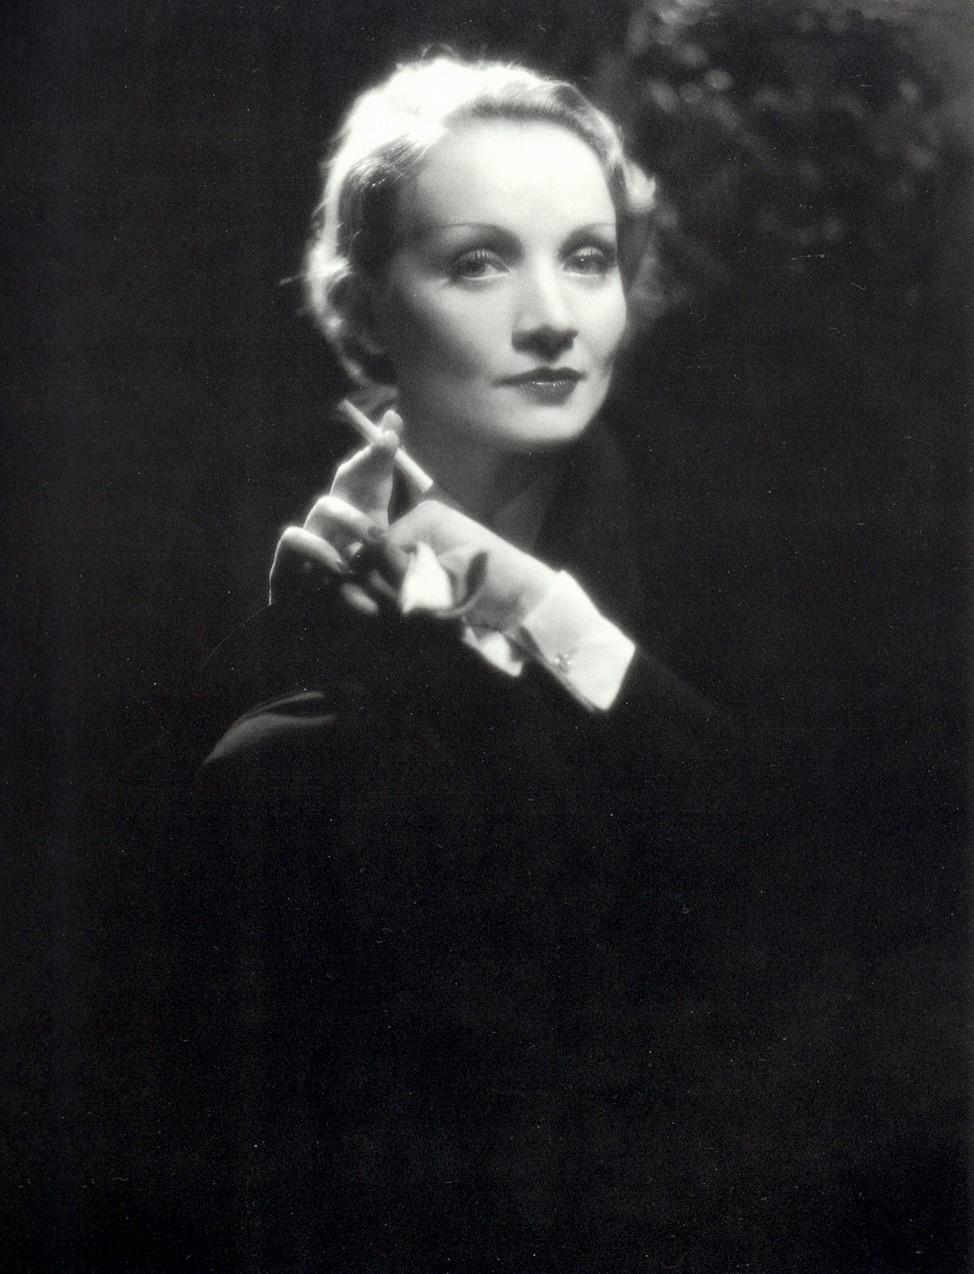 Austin Film Society Marlene Dietrich in Words & Image. Austin Film